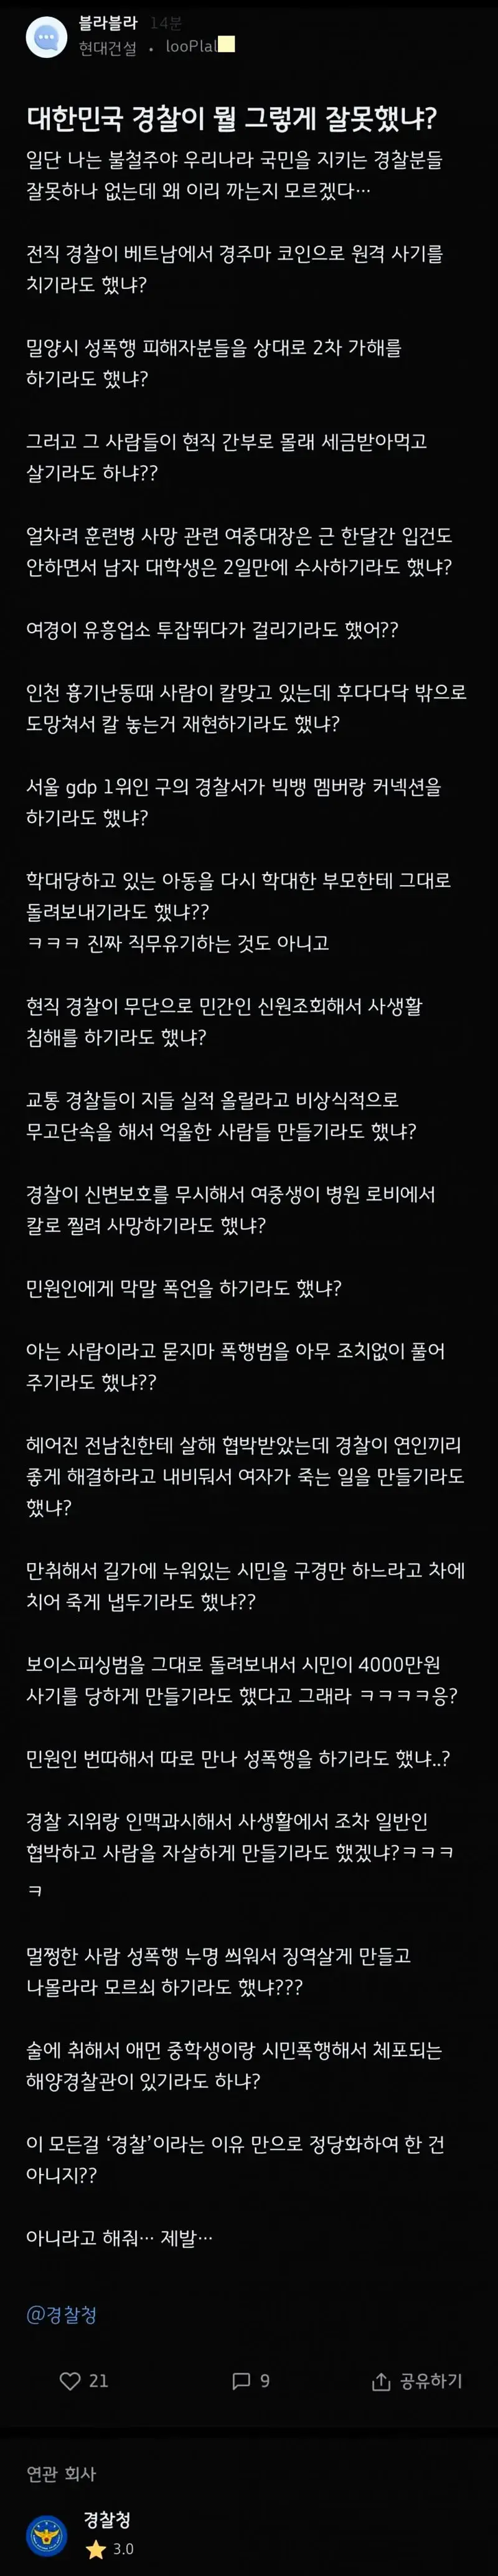 님들아 경찰이 뭘 그렇게 잘못했음 ??,,